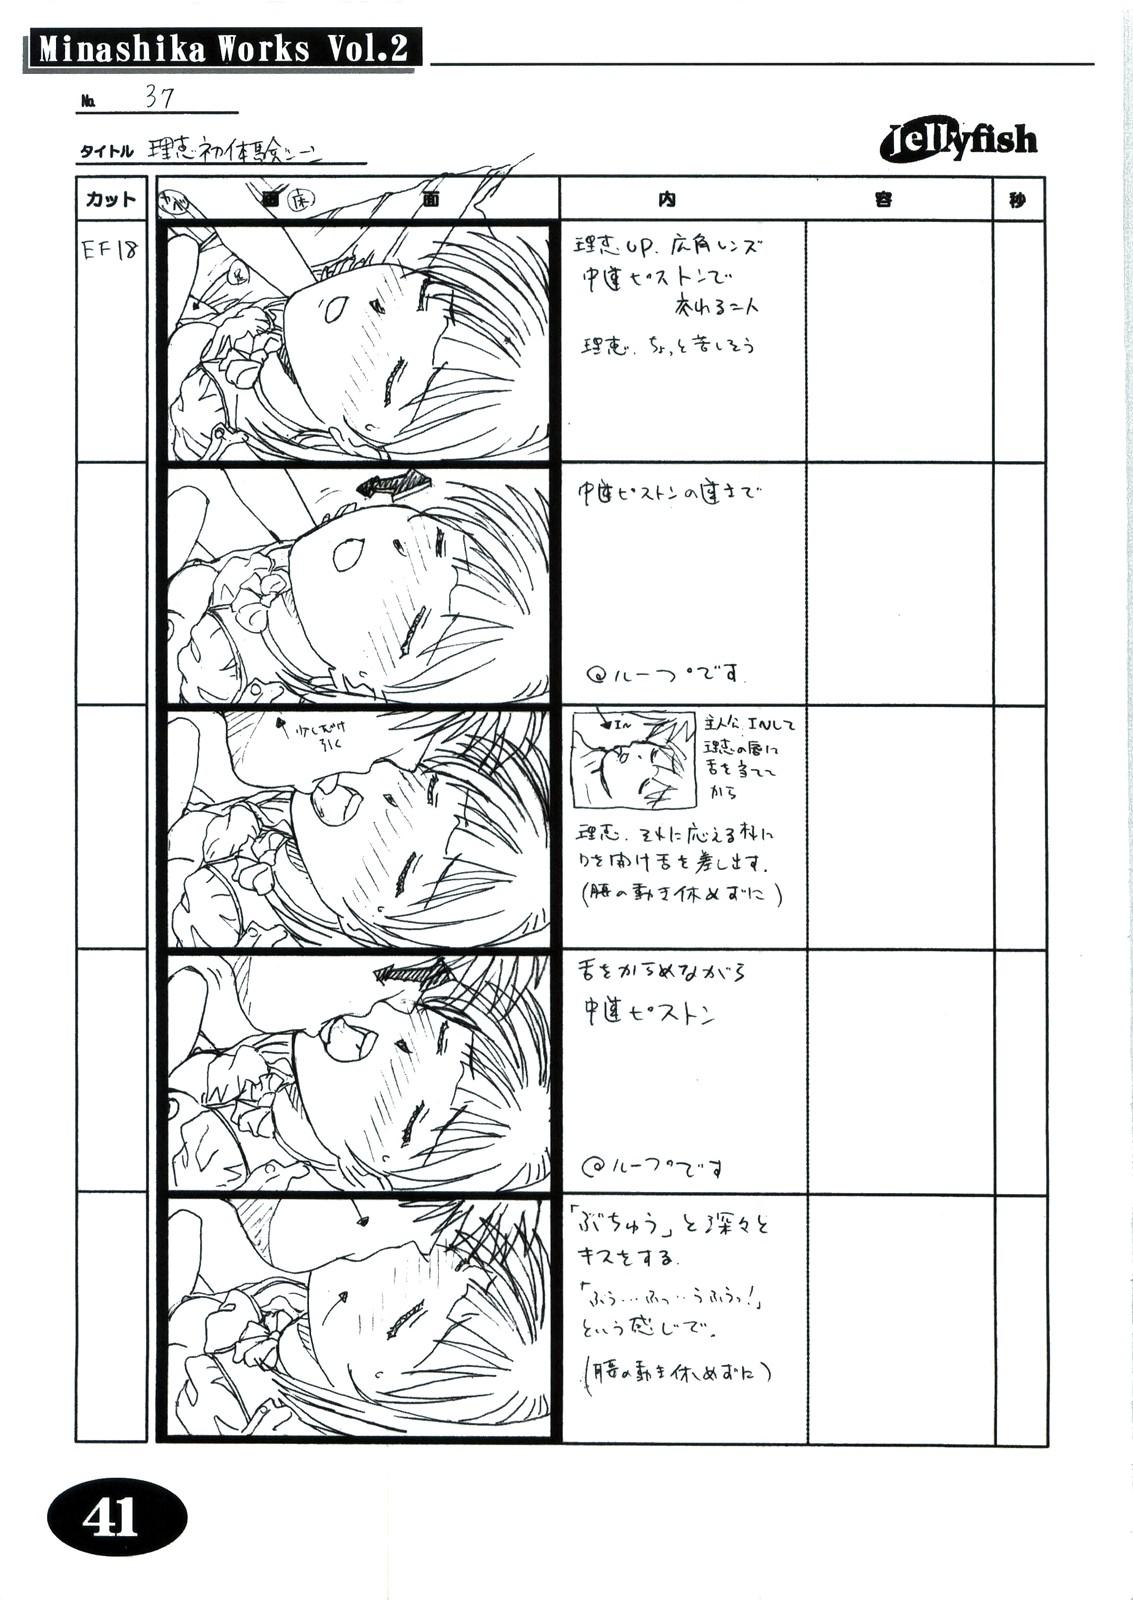 [Makino Jimusho (Taki Minashika)] Minasika Works Vol.2 "LOVERS ~Koi ni Ochitara...~" Ekonte-shuu 39